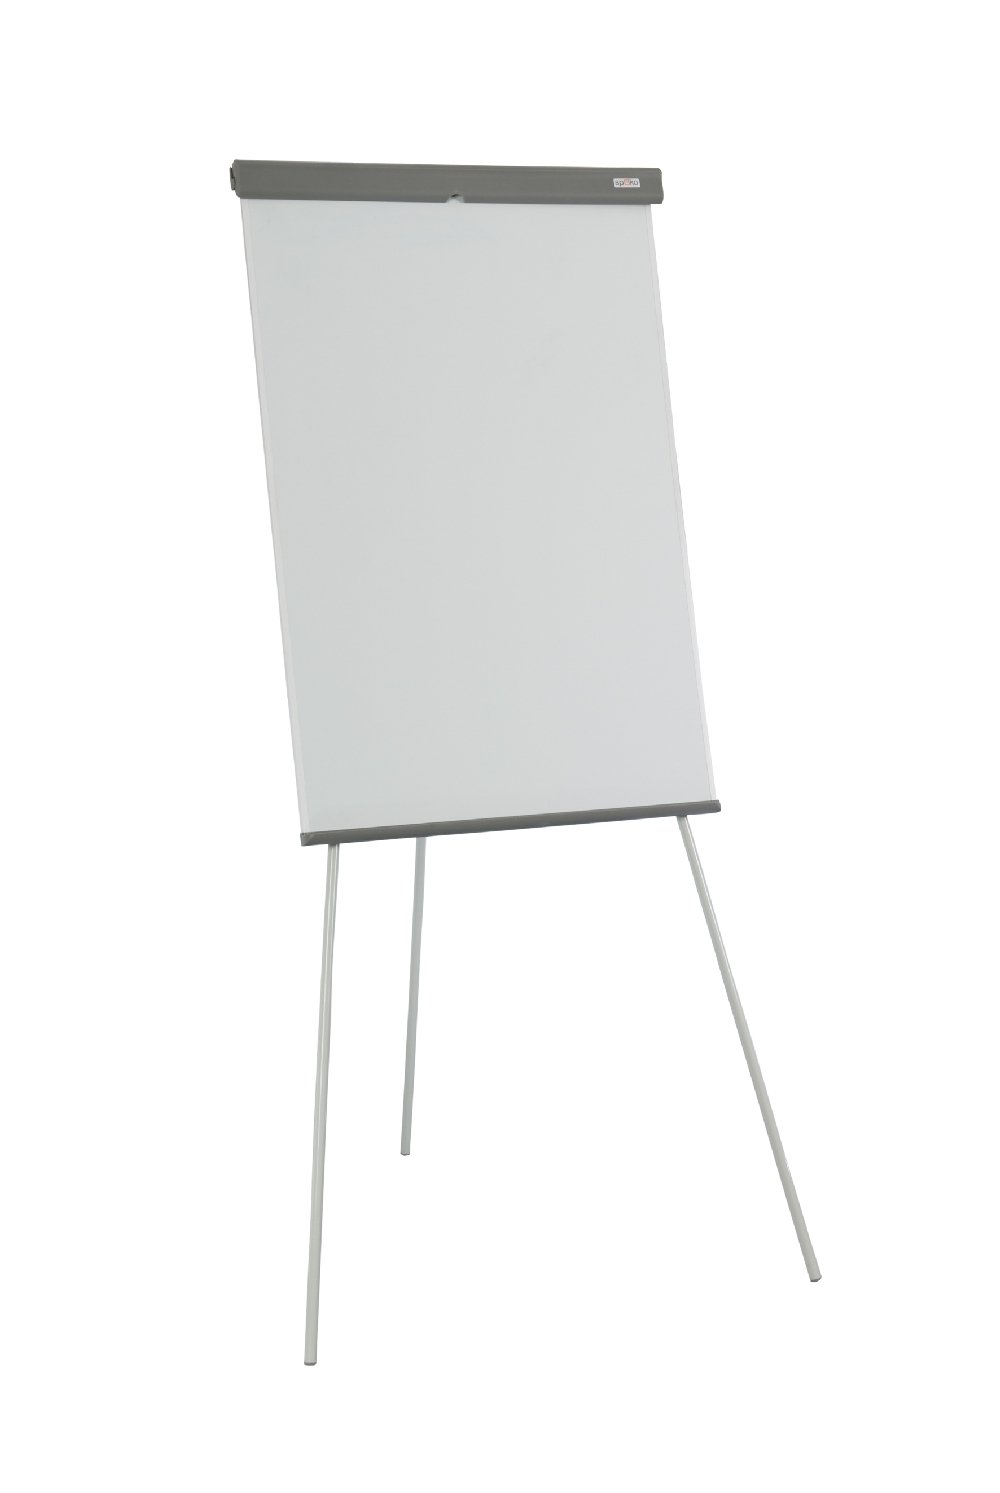 Spoko S0712 flipchart, 105 x 68 cm, výška až 180 cm, bílý